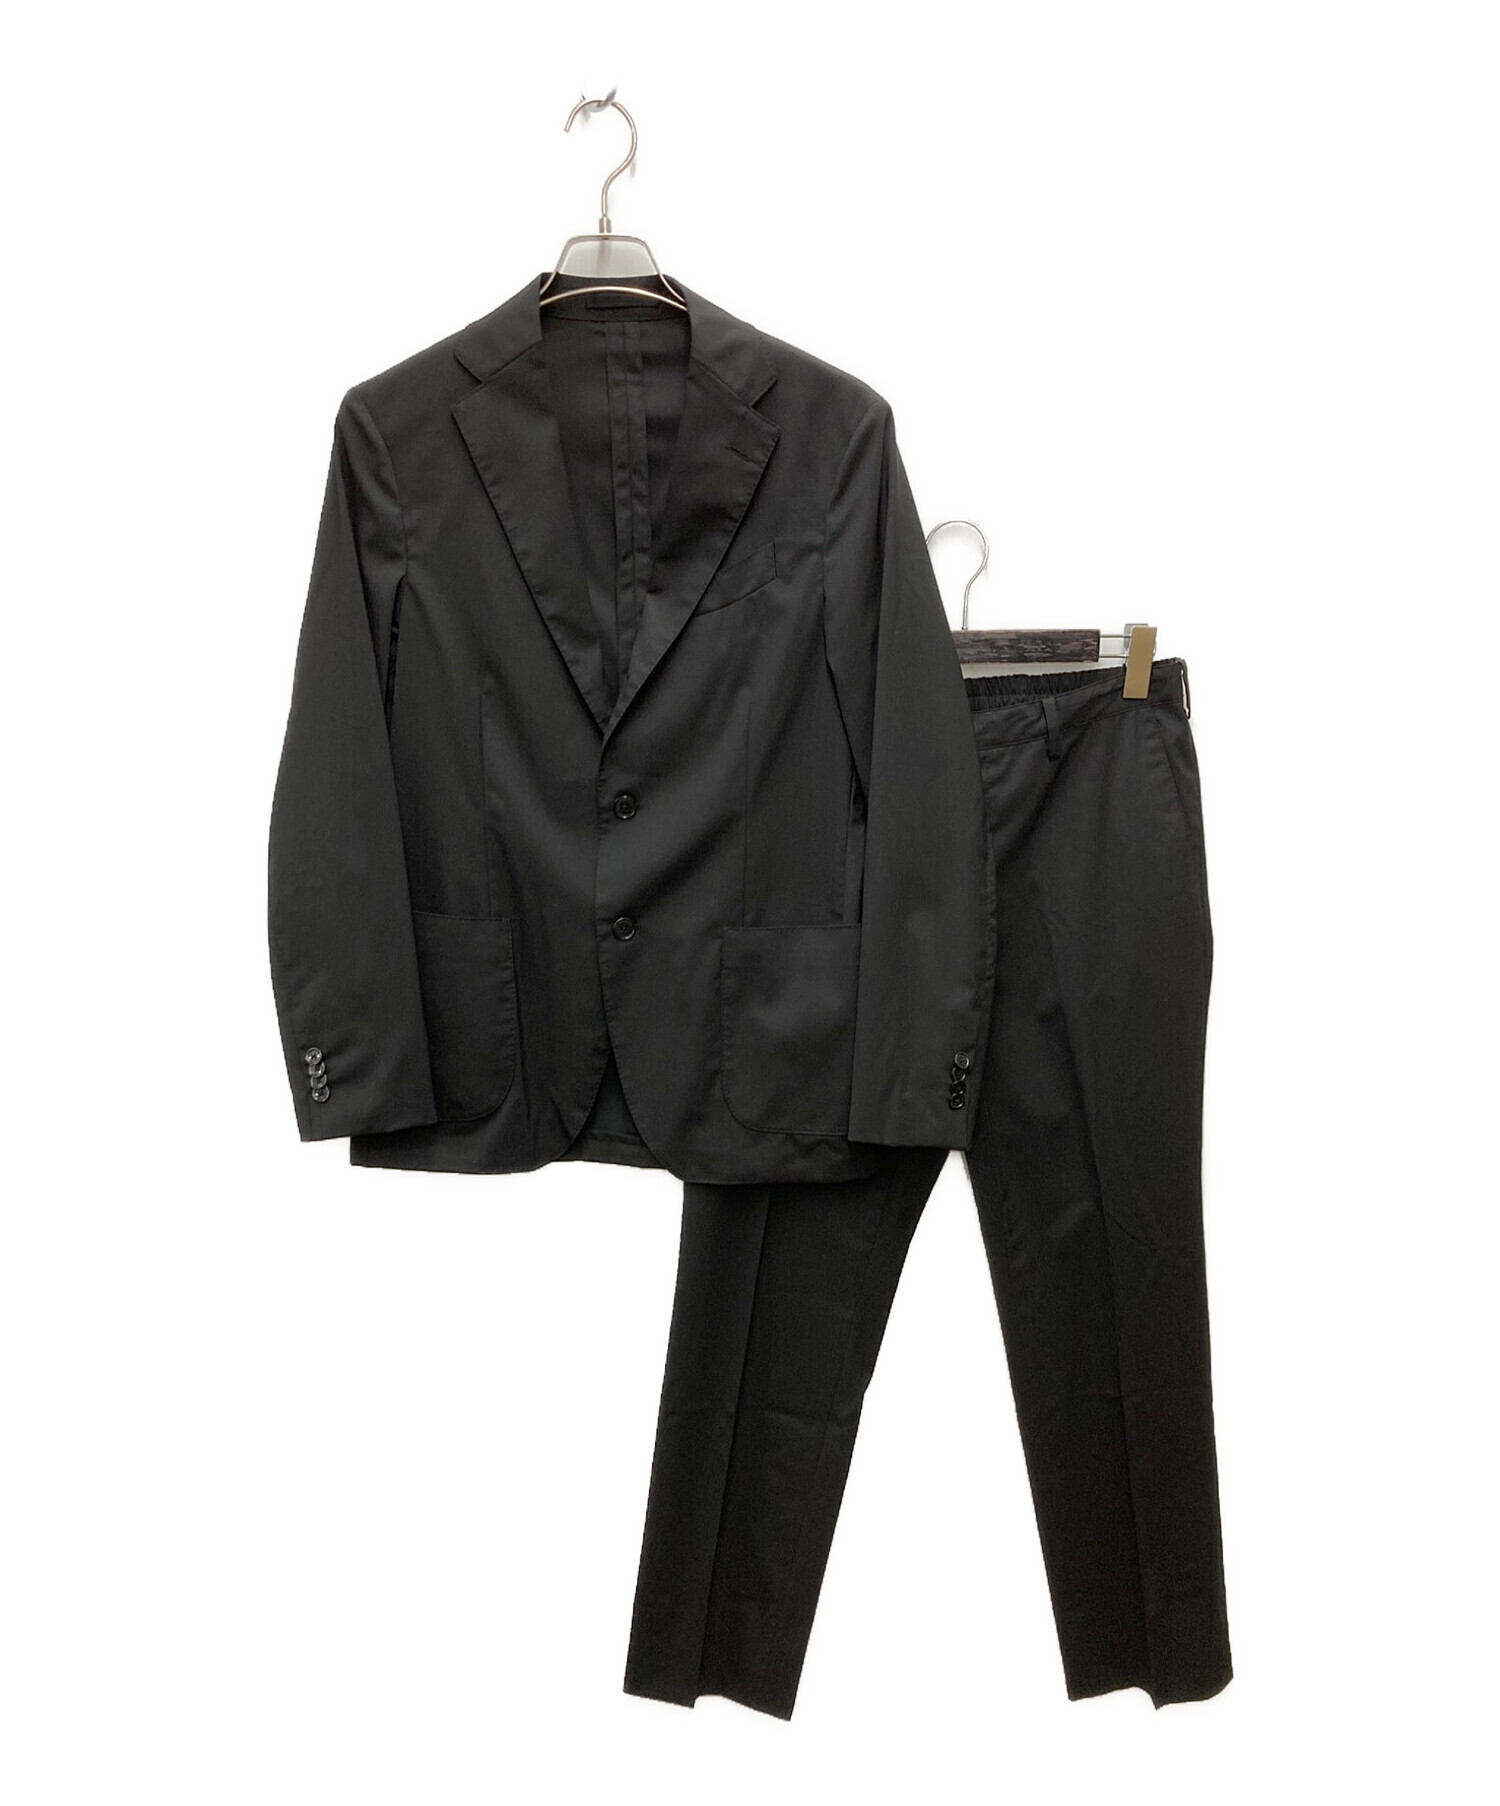 ラルディーニ LARDINI メンズスーツ easy wear サイズ46-